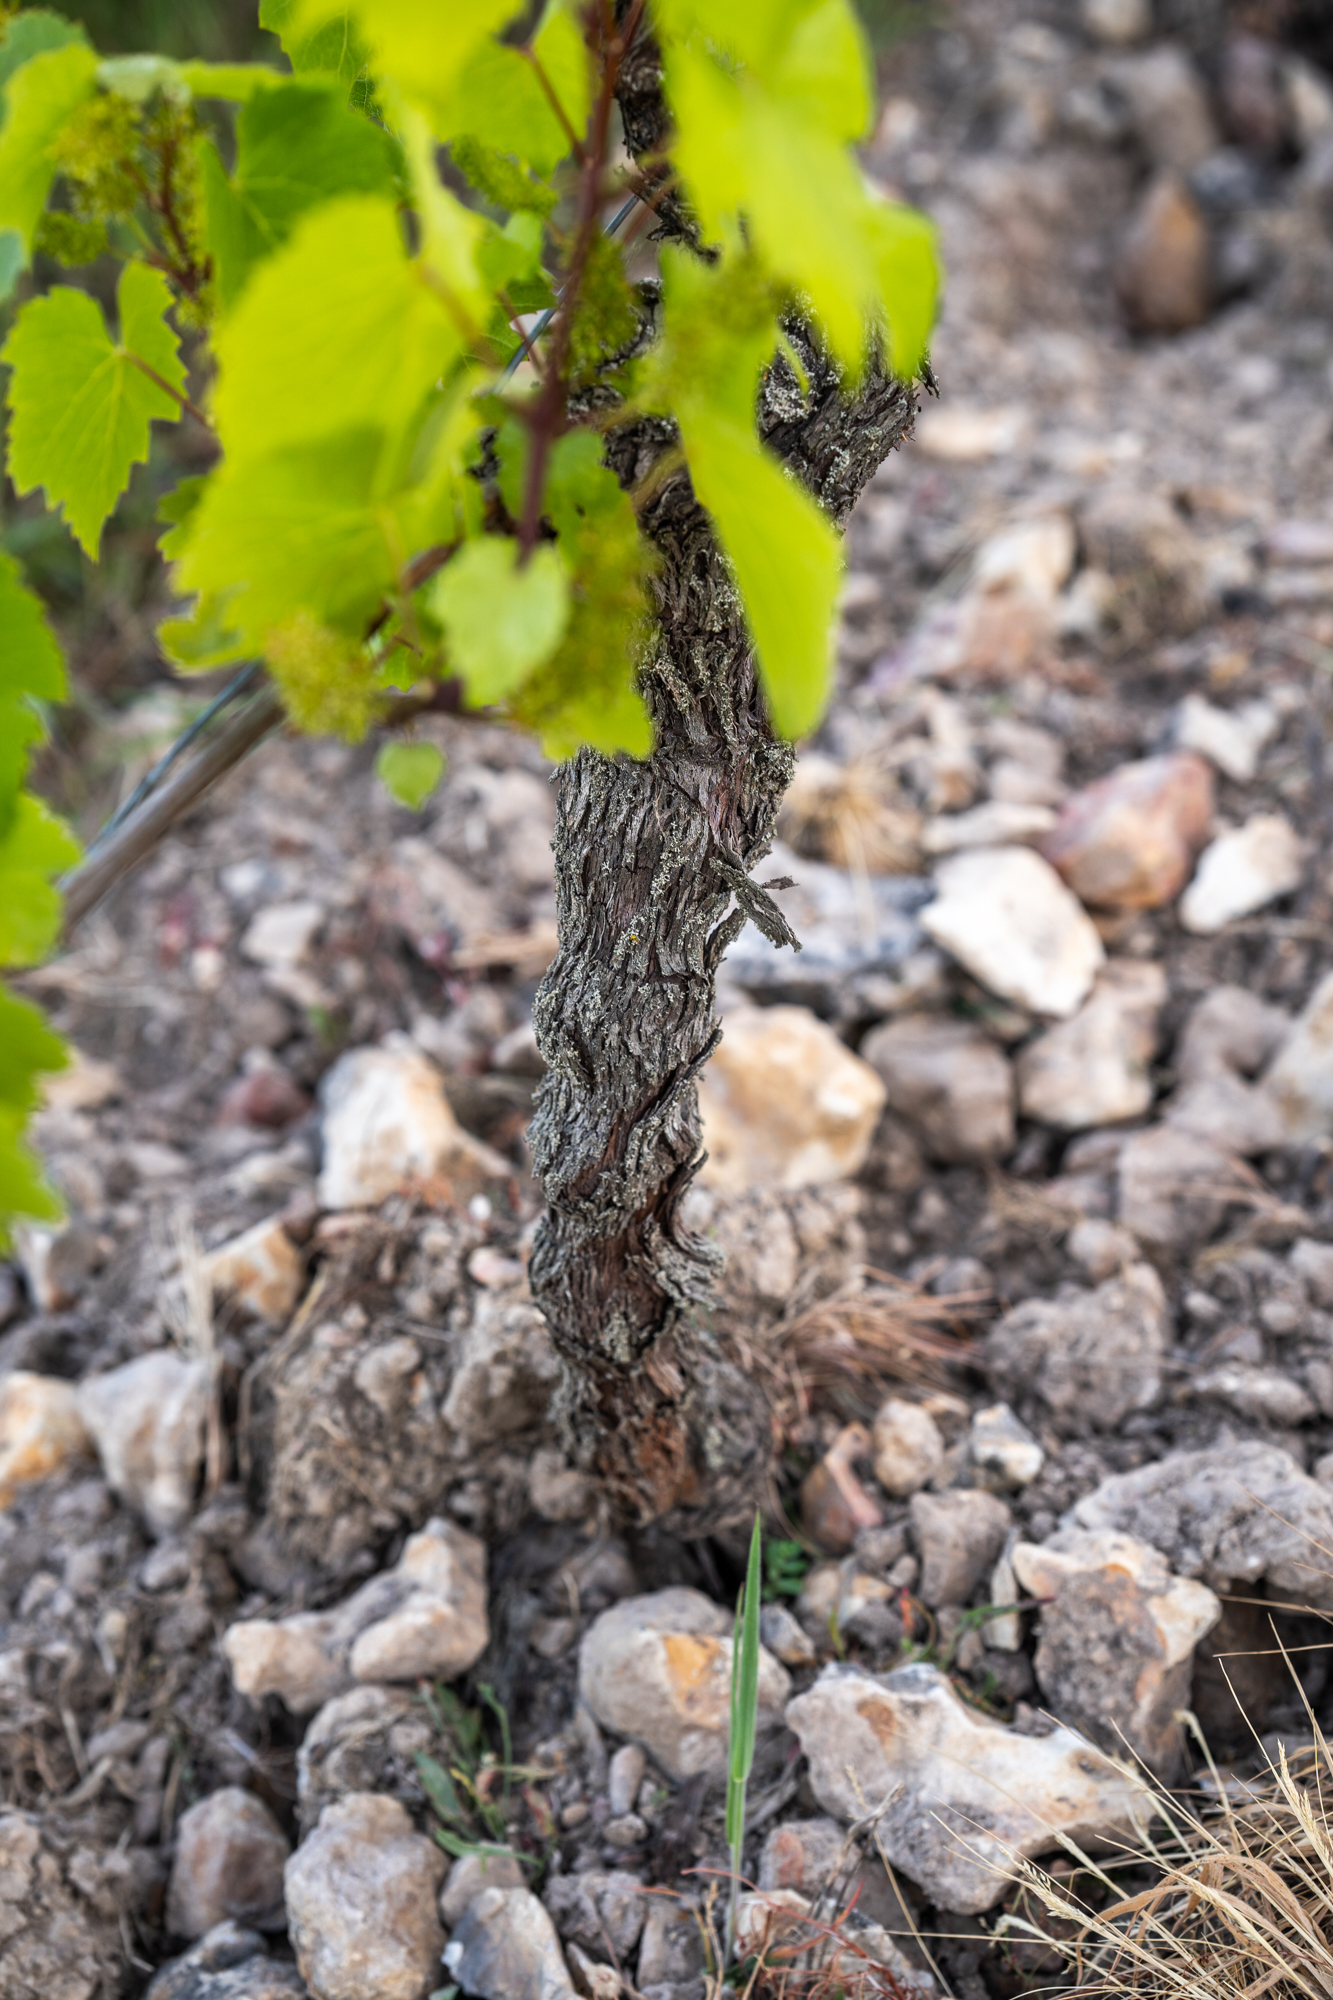 reportage photo viticulture vigneron vignoble vin terroir agriculture indre et loire